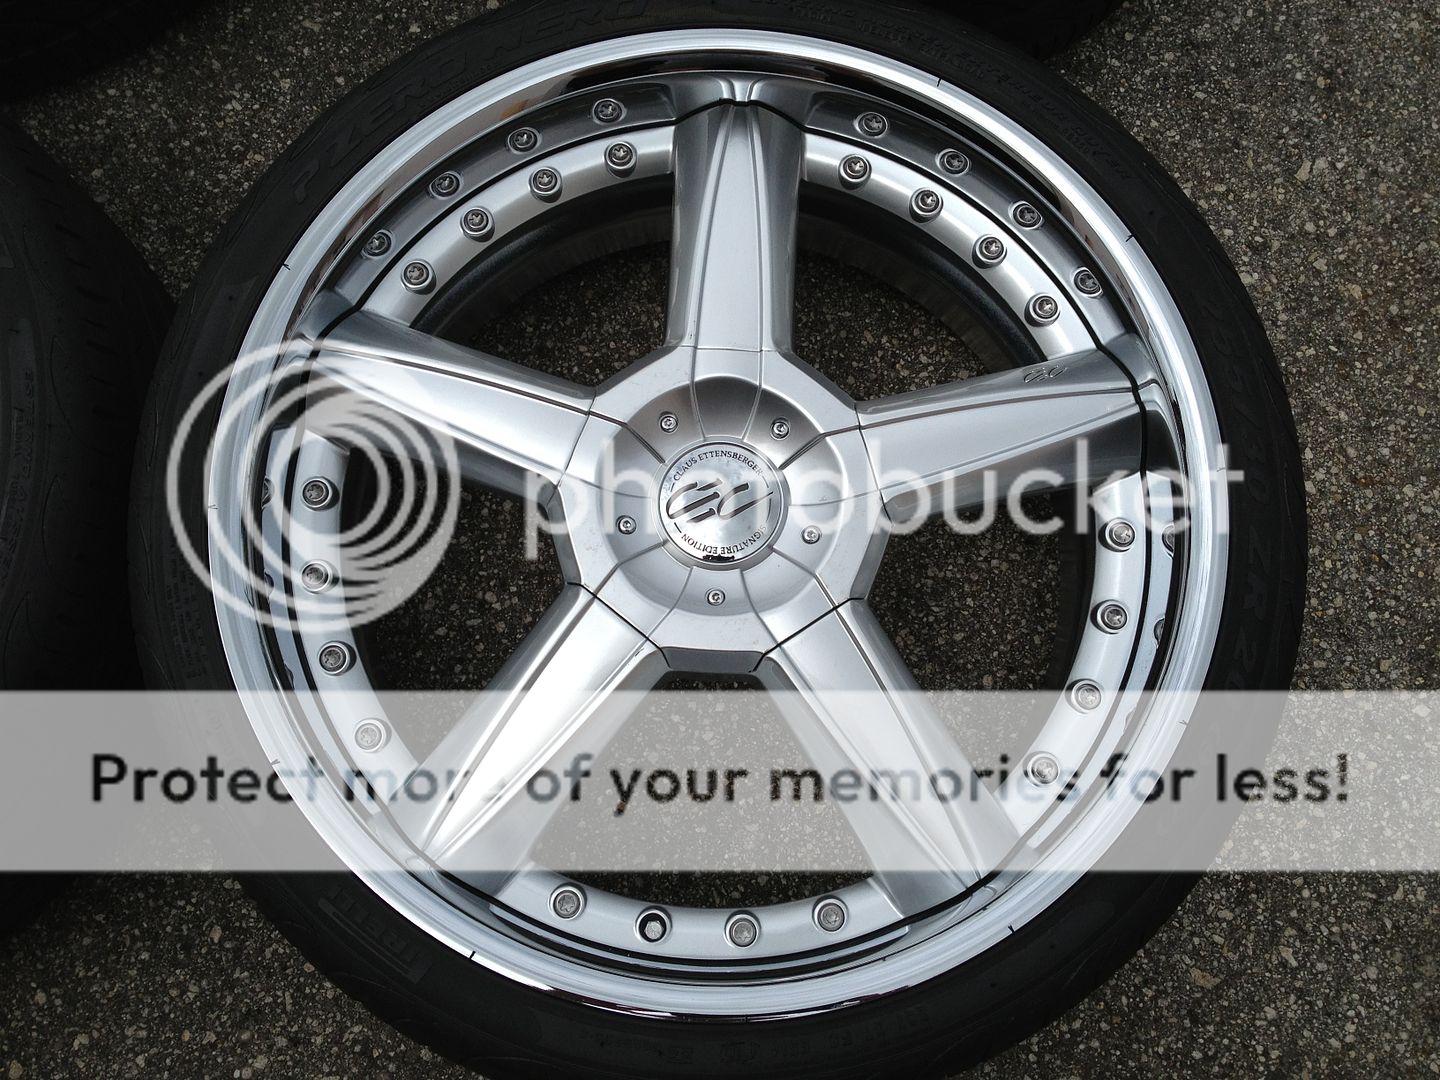 6 20" Mercedes McLaren SLR Wheels Tires Rims CEC 7254 with 2 Spares